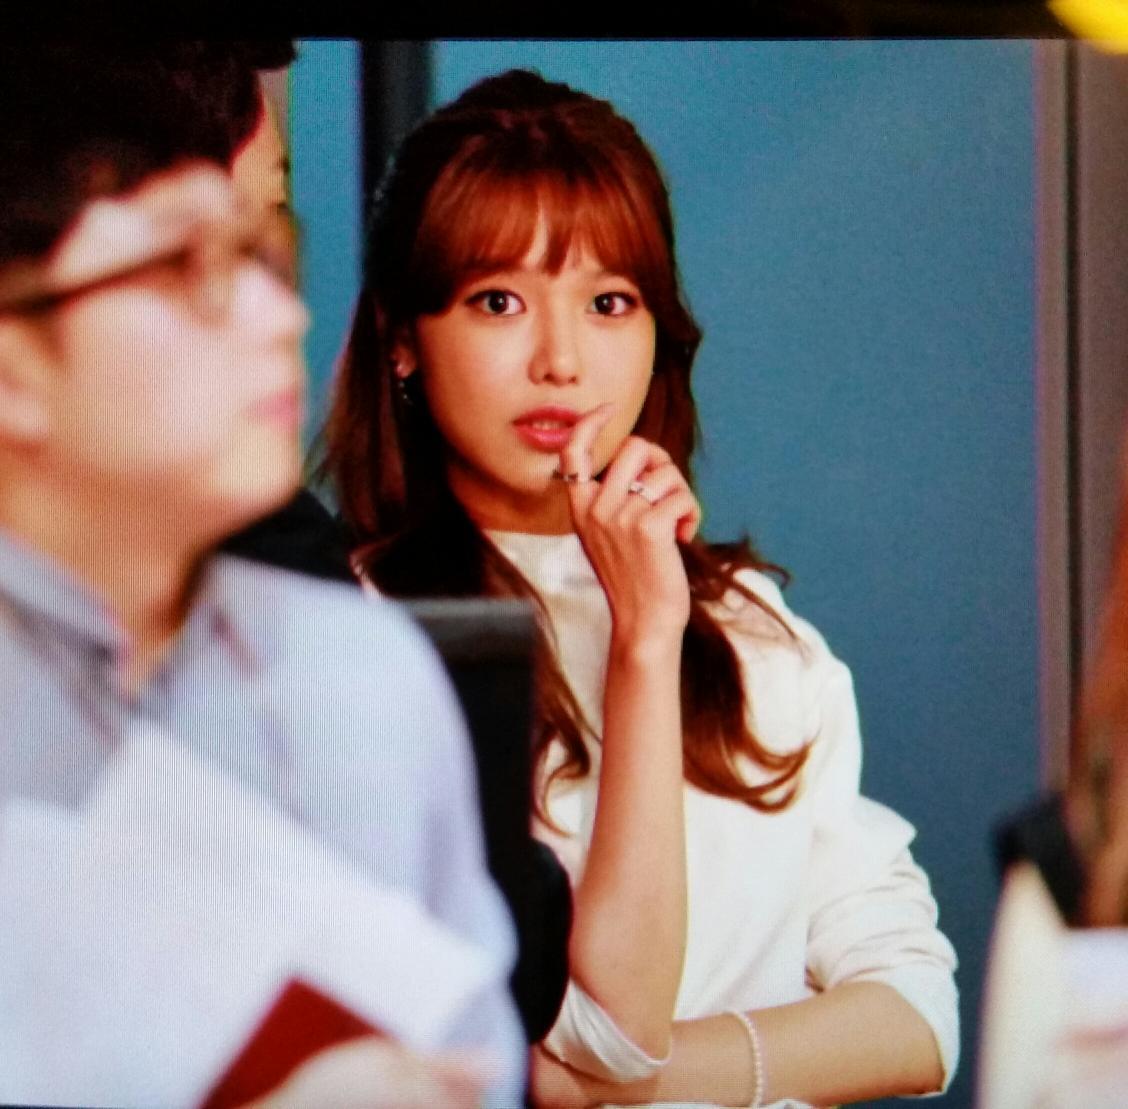 [PIC][04-09-2014]SooYoung tham dự buổi họp báo bộ phim truyền hình "Springday of My Life" vào trưa nay Bwq8LPTCQAAtj_9